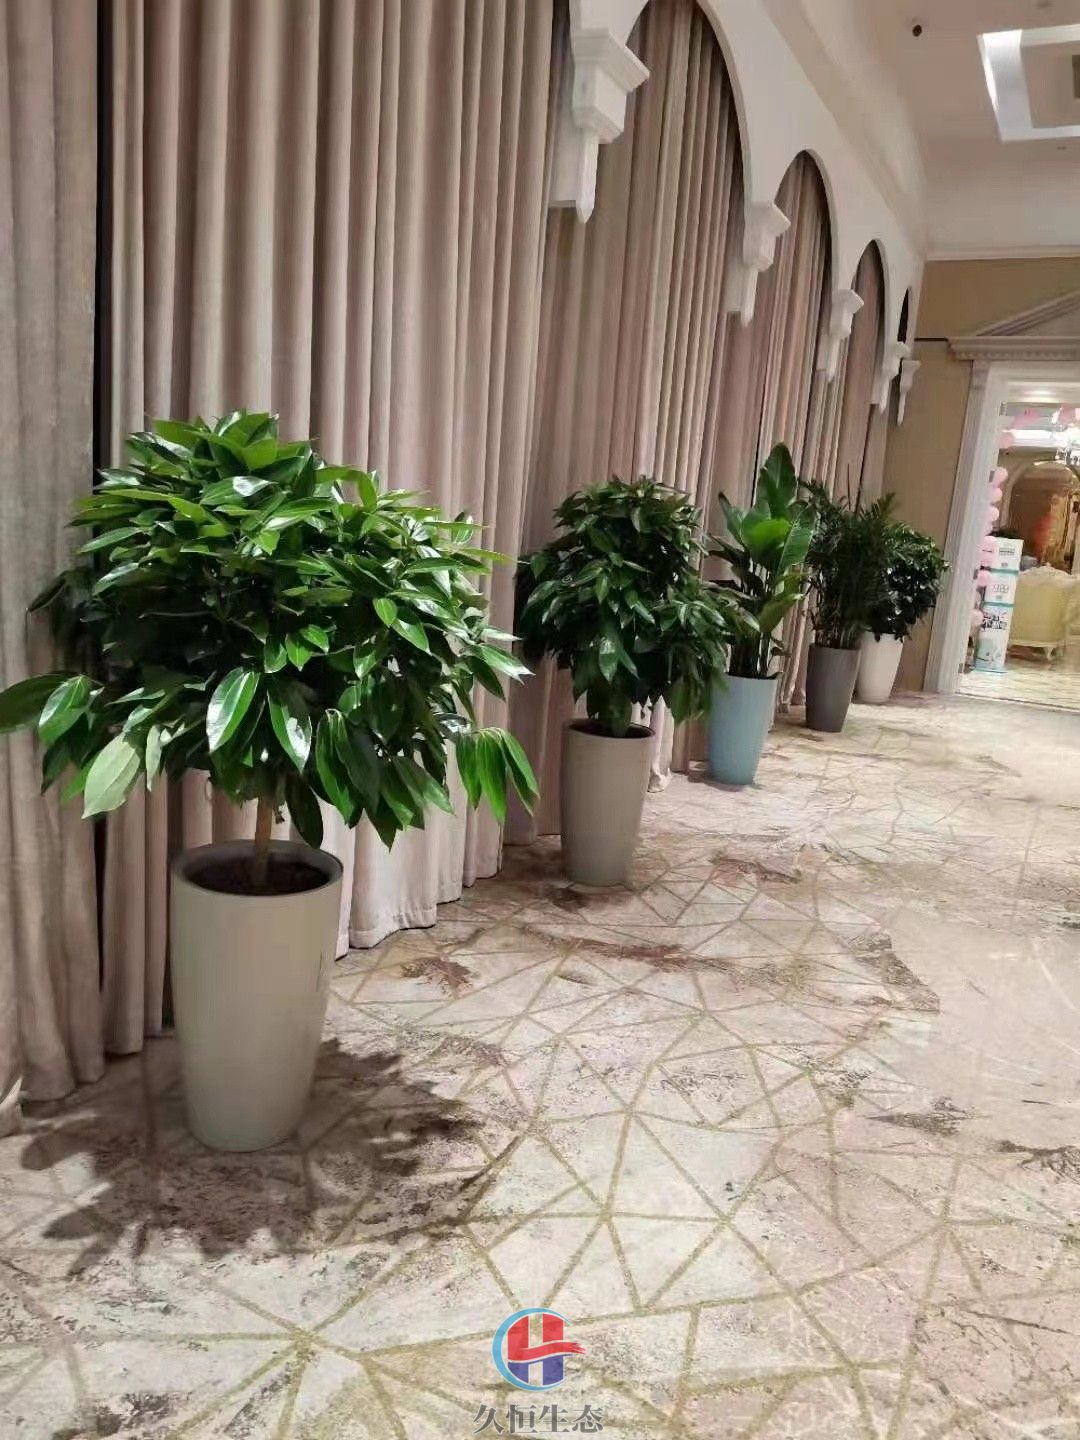 越城酒店走廊花卉绿植摆放